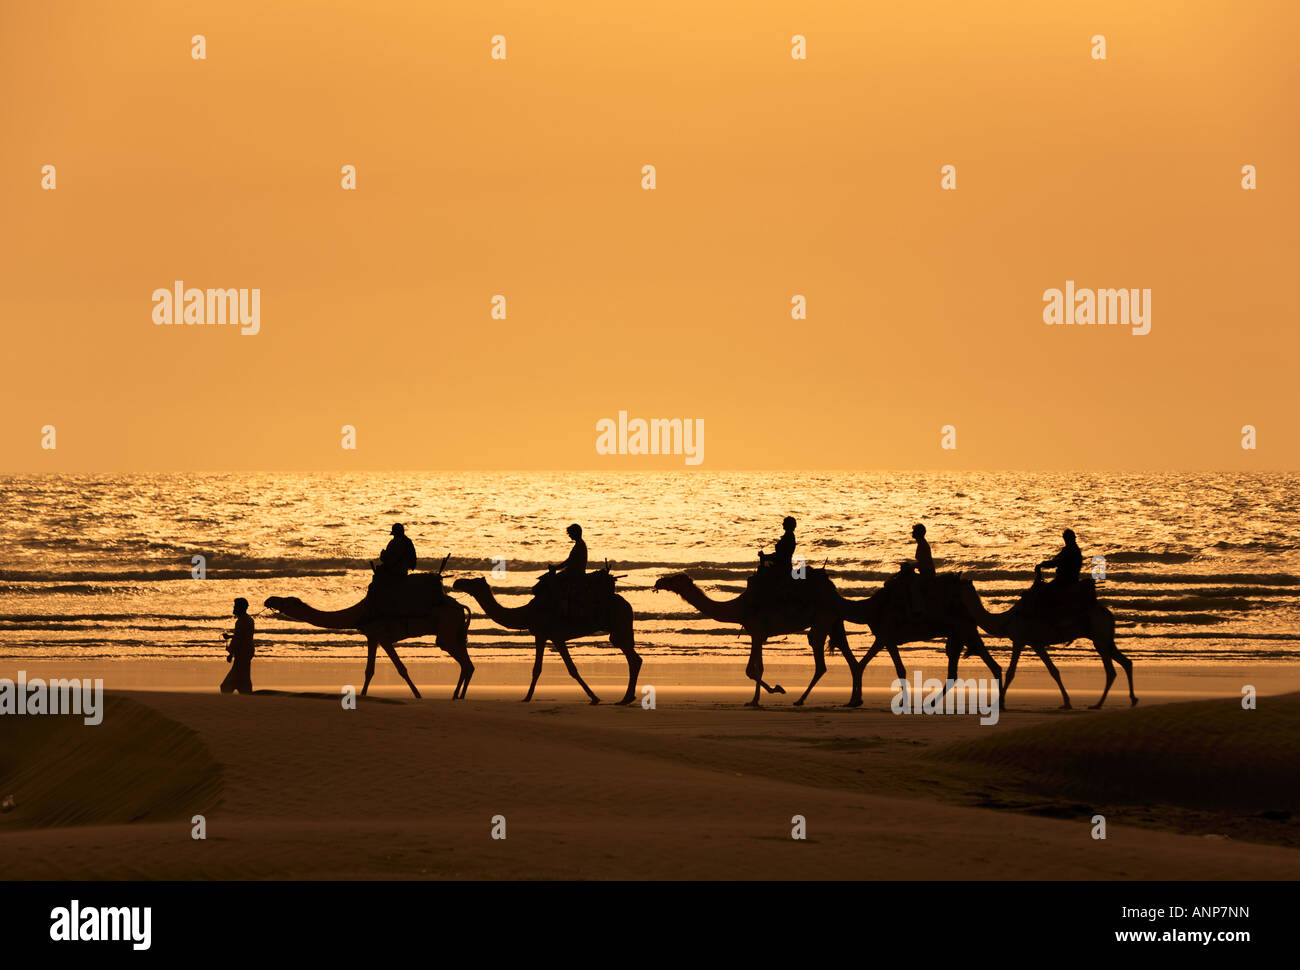 Les touristes monter des chameaux train sur la mer au coucher du soleil le Maroc Banque D'Images